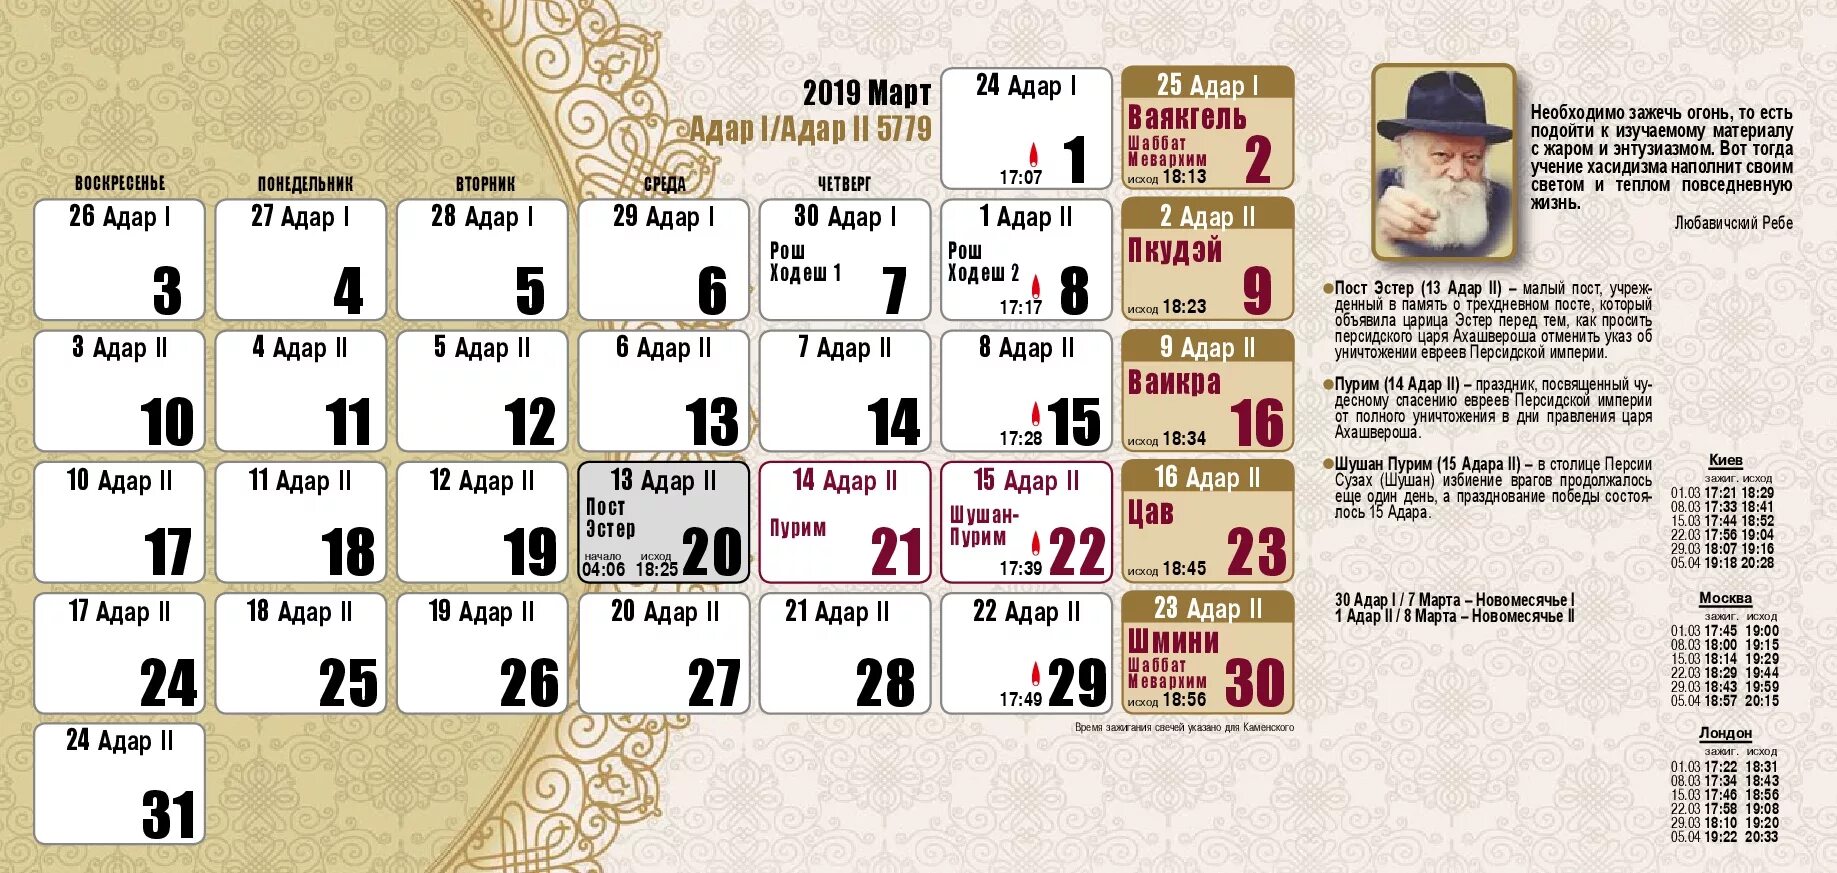 Еврейские праздники в сентябре. Календарь Израиля. Календарь еврейских праздников. Календарье Верйский праздников. Еврейские календарные праздники.